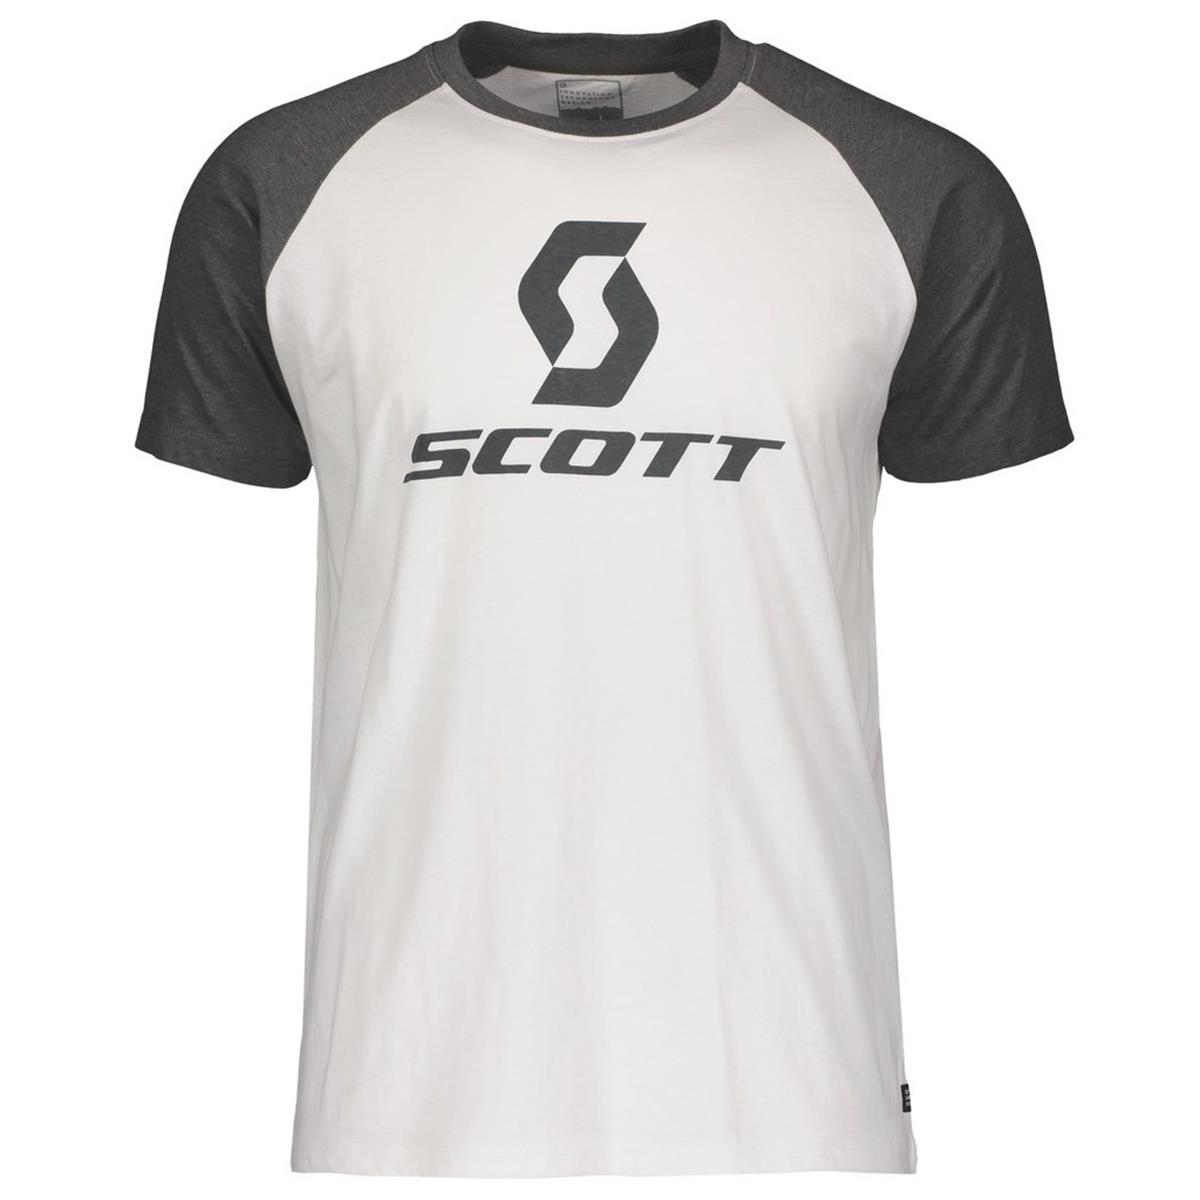 Scott T-Shirt 10 Icon Raglan Blanc/Gris foncé Melang